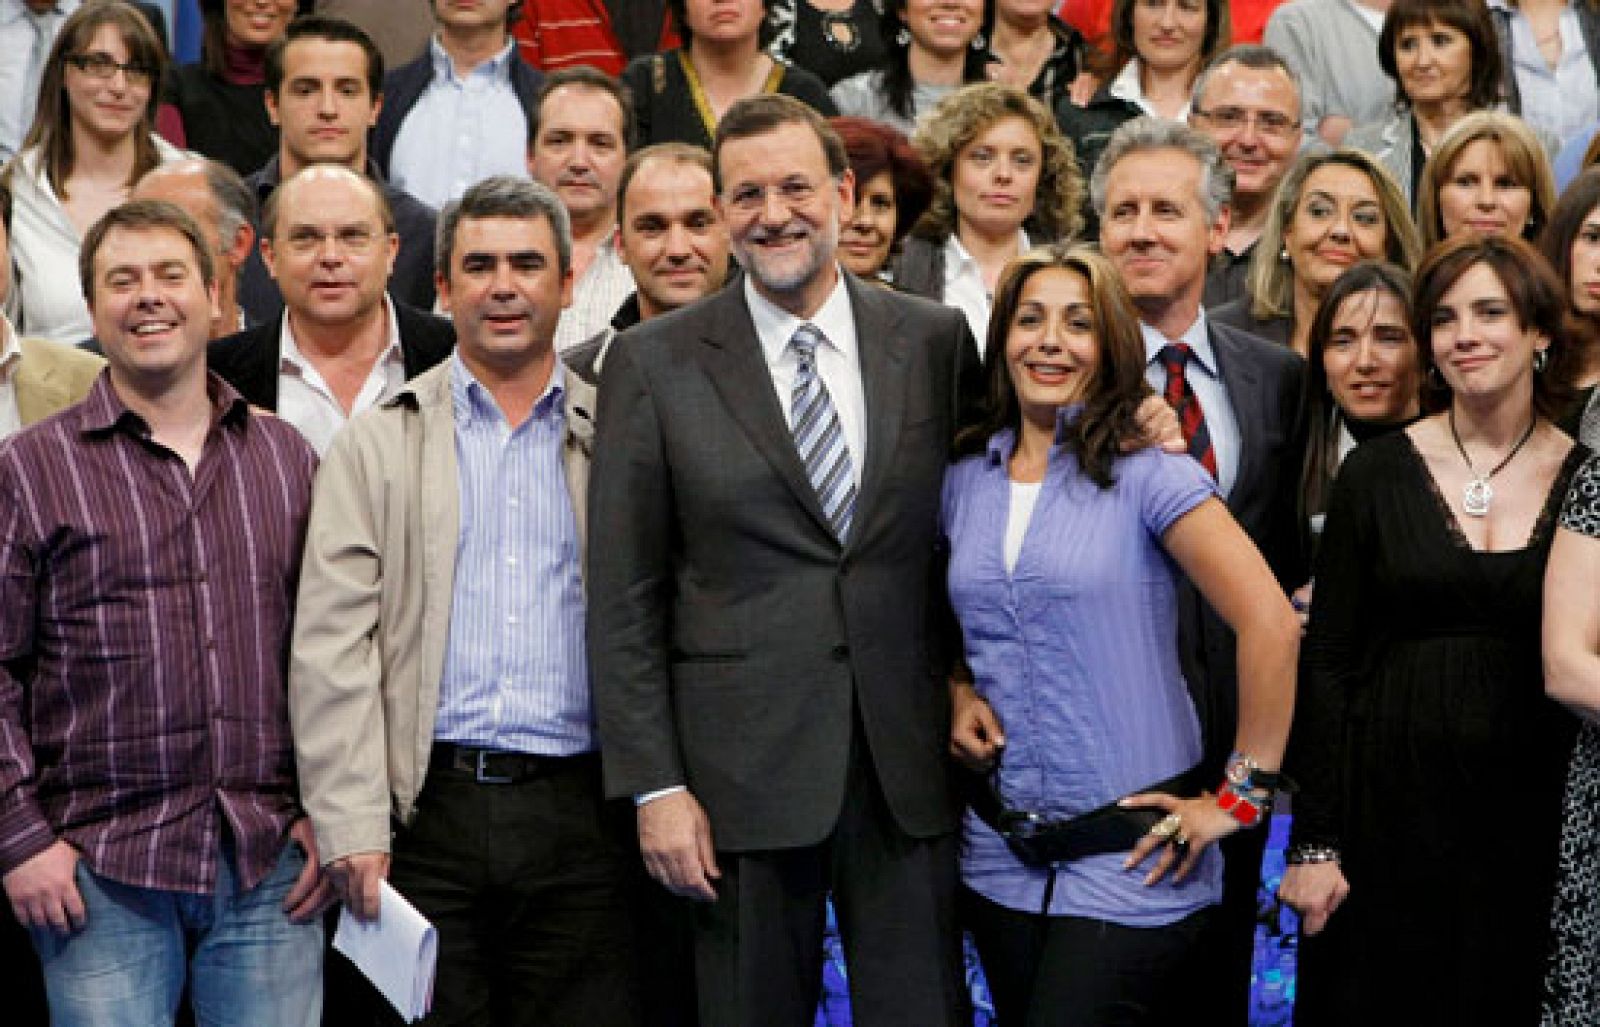 La otra cara del 'Tengo una pregunta usted' con Rajoy